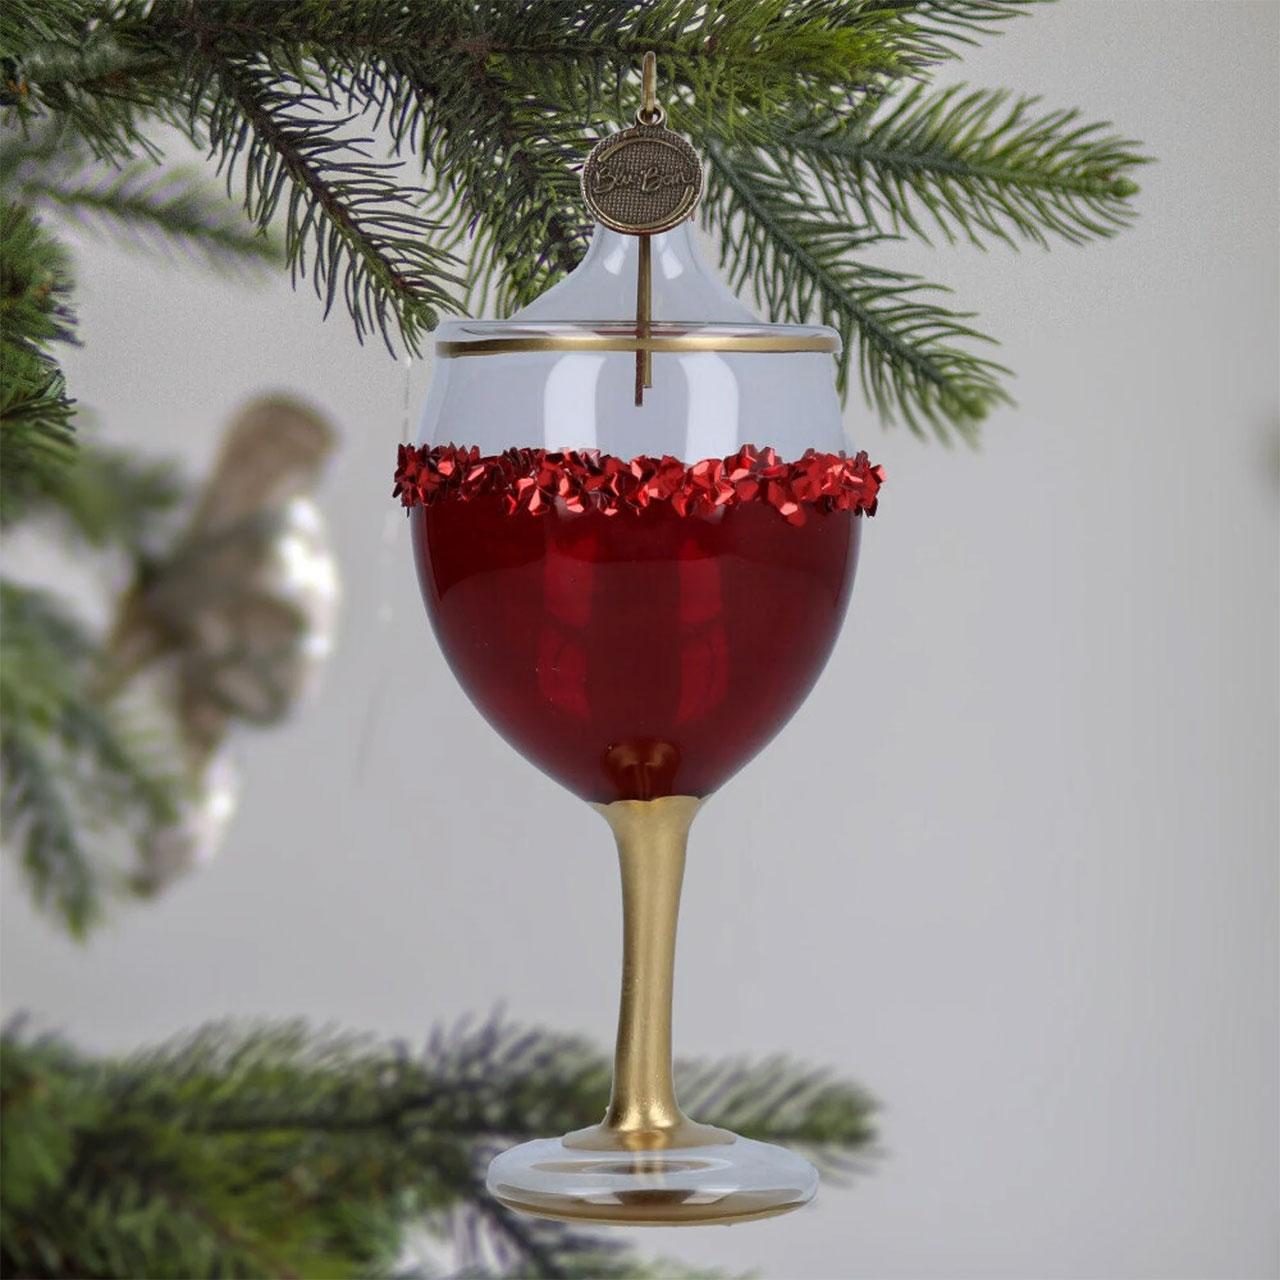  - Pripreme za dekoriranje - Čaše s vinom umjesto božićnih kuglica